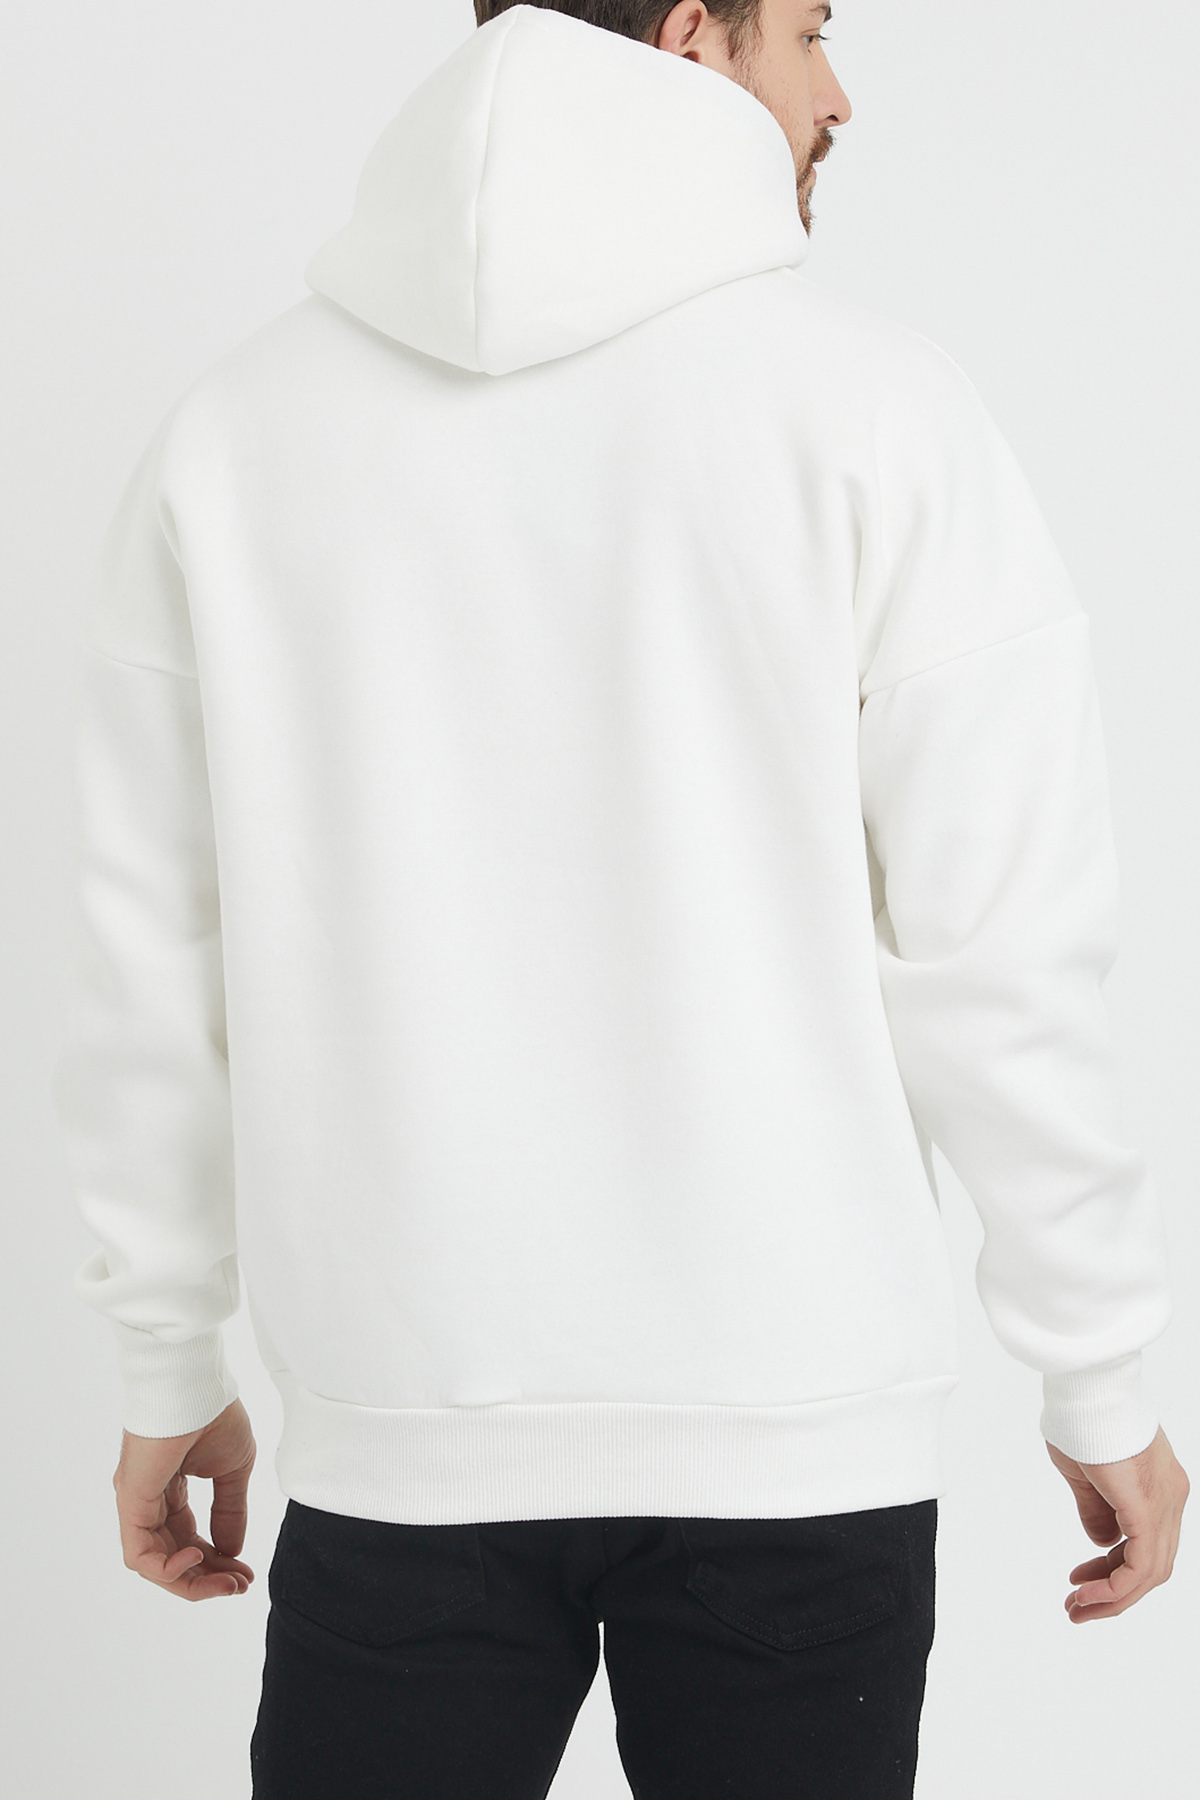 Beyaz Baskılı Sweatshirt 1KXE8-44367-01 - 6